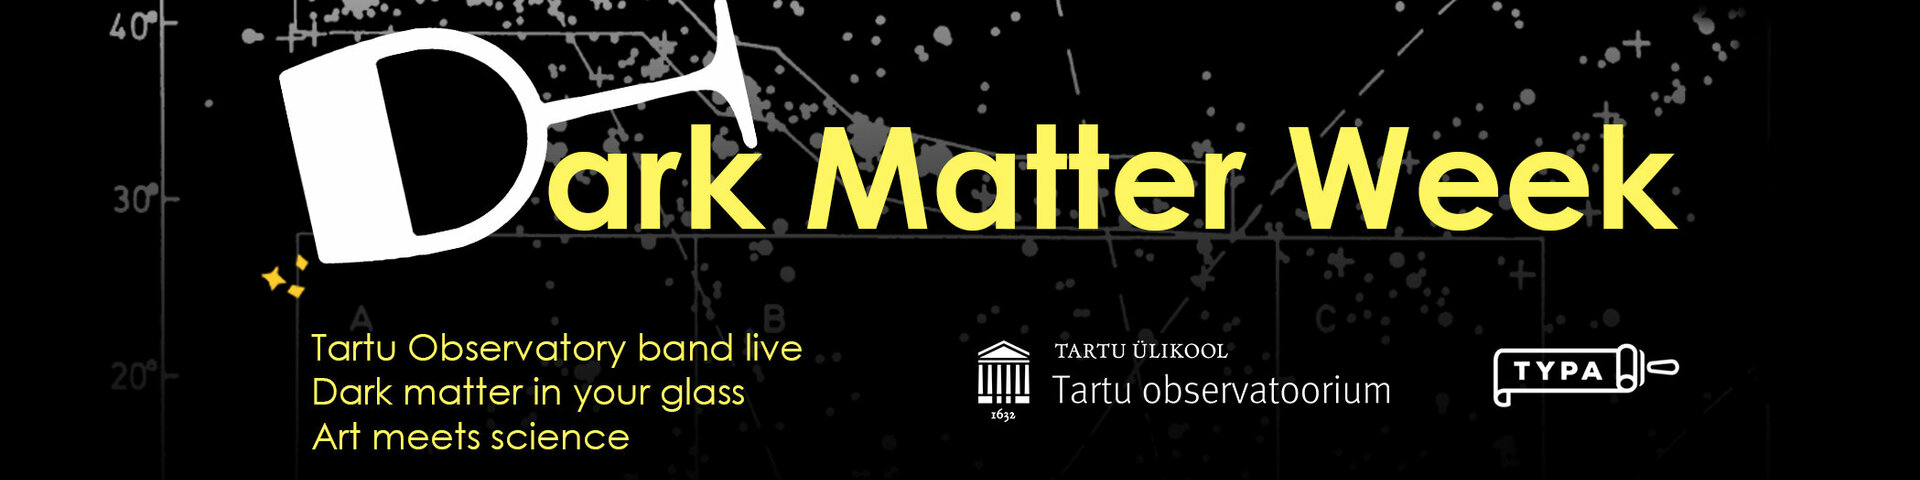 Dark Matter Week banner